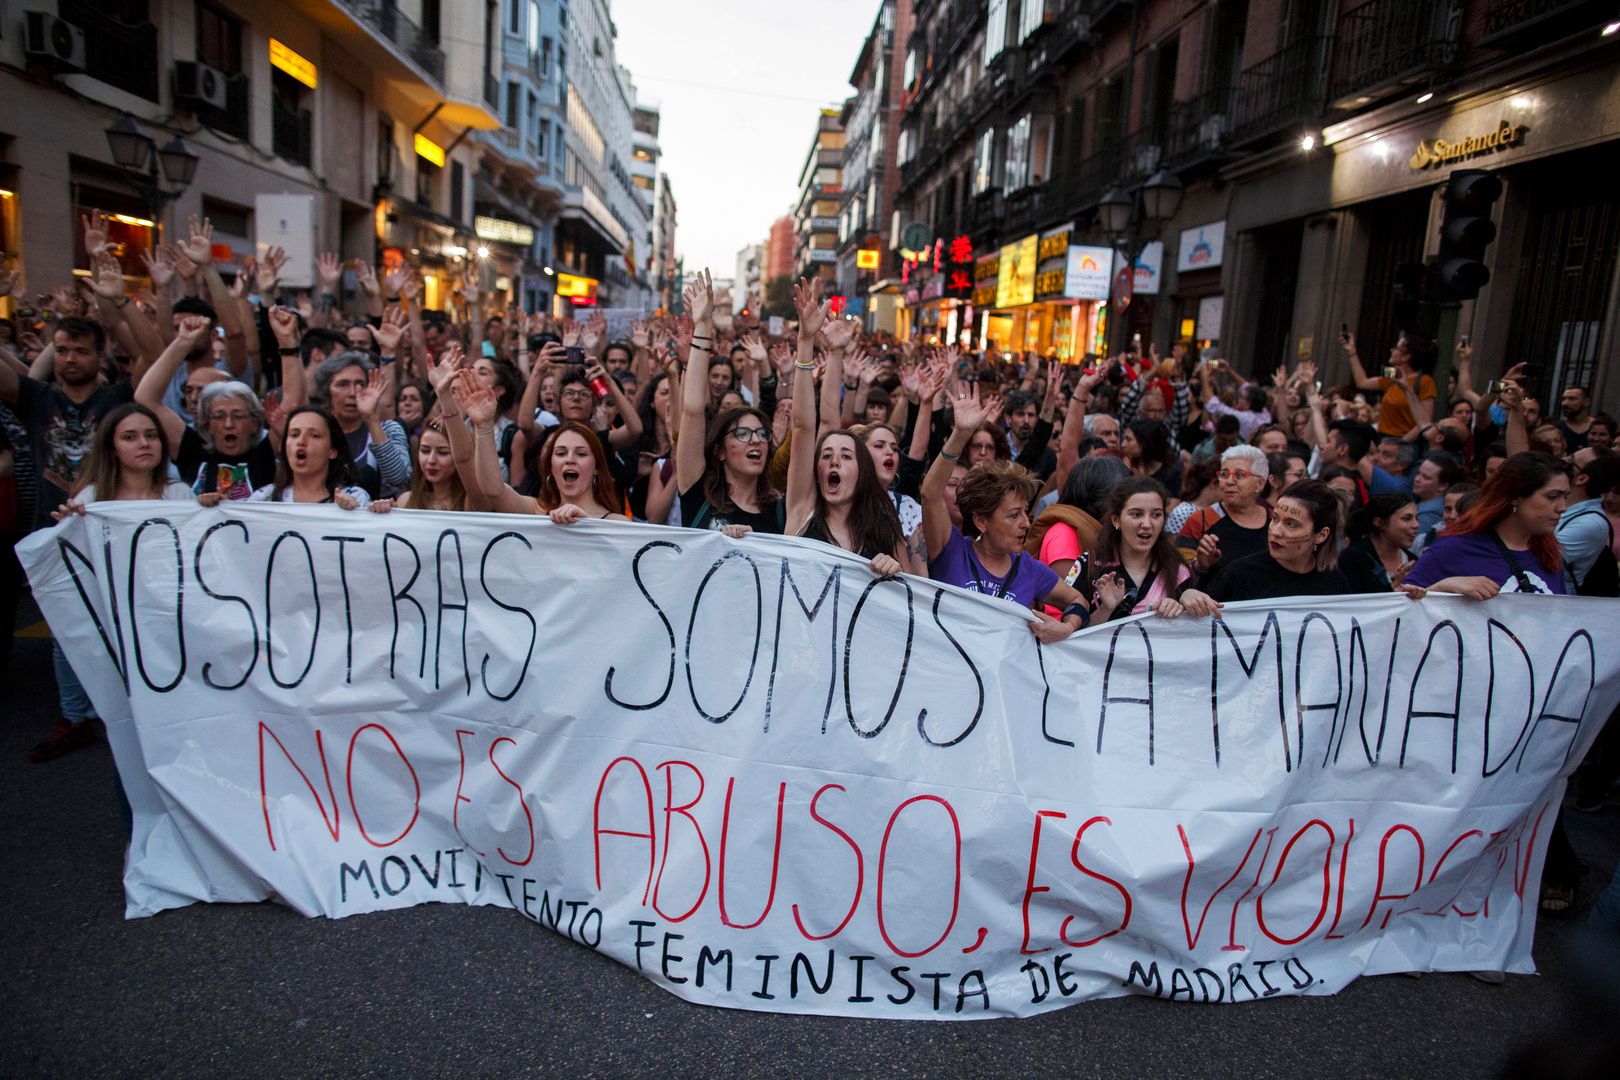 Kontrowersyjna decyzja sądu ws. gangu gwałcicieli. Hiszpanie protestują